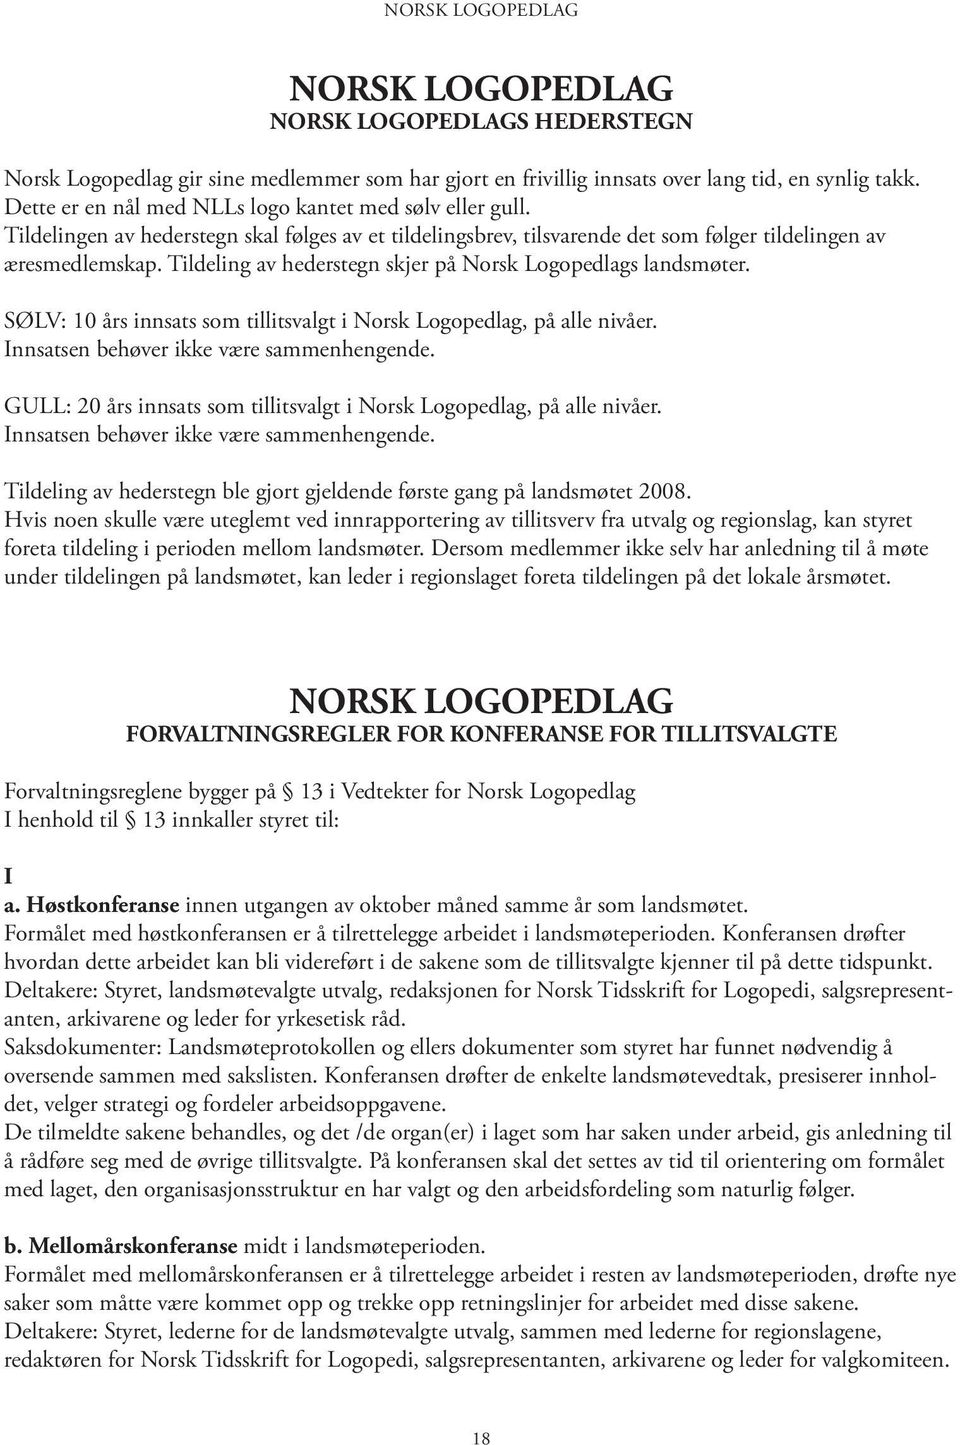 Tildeling av hederstegn skjer på Norsk Logopedlags landsmøter. Innsatsen behøver ikke være sammenhengende. GULL: 20 års innsats som tillitsvalgt i Norsk Logopedlag, på alle nivåer.